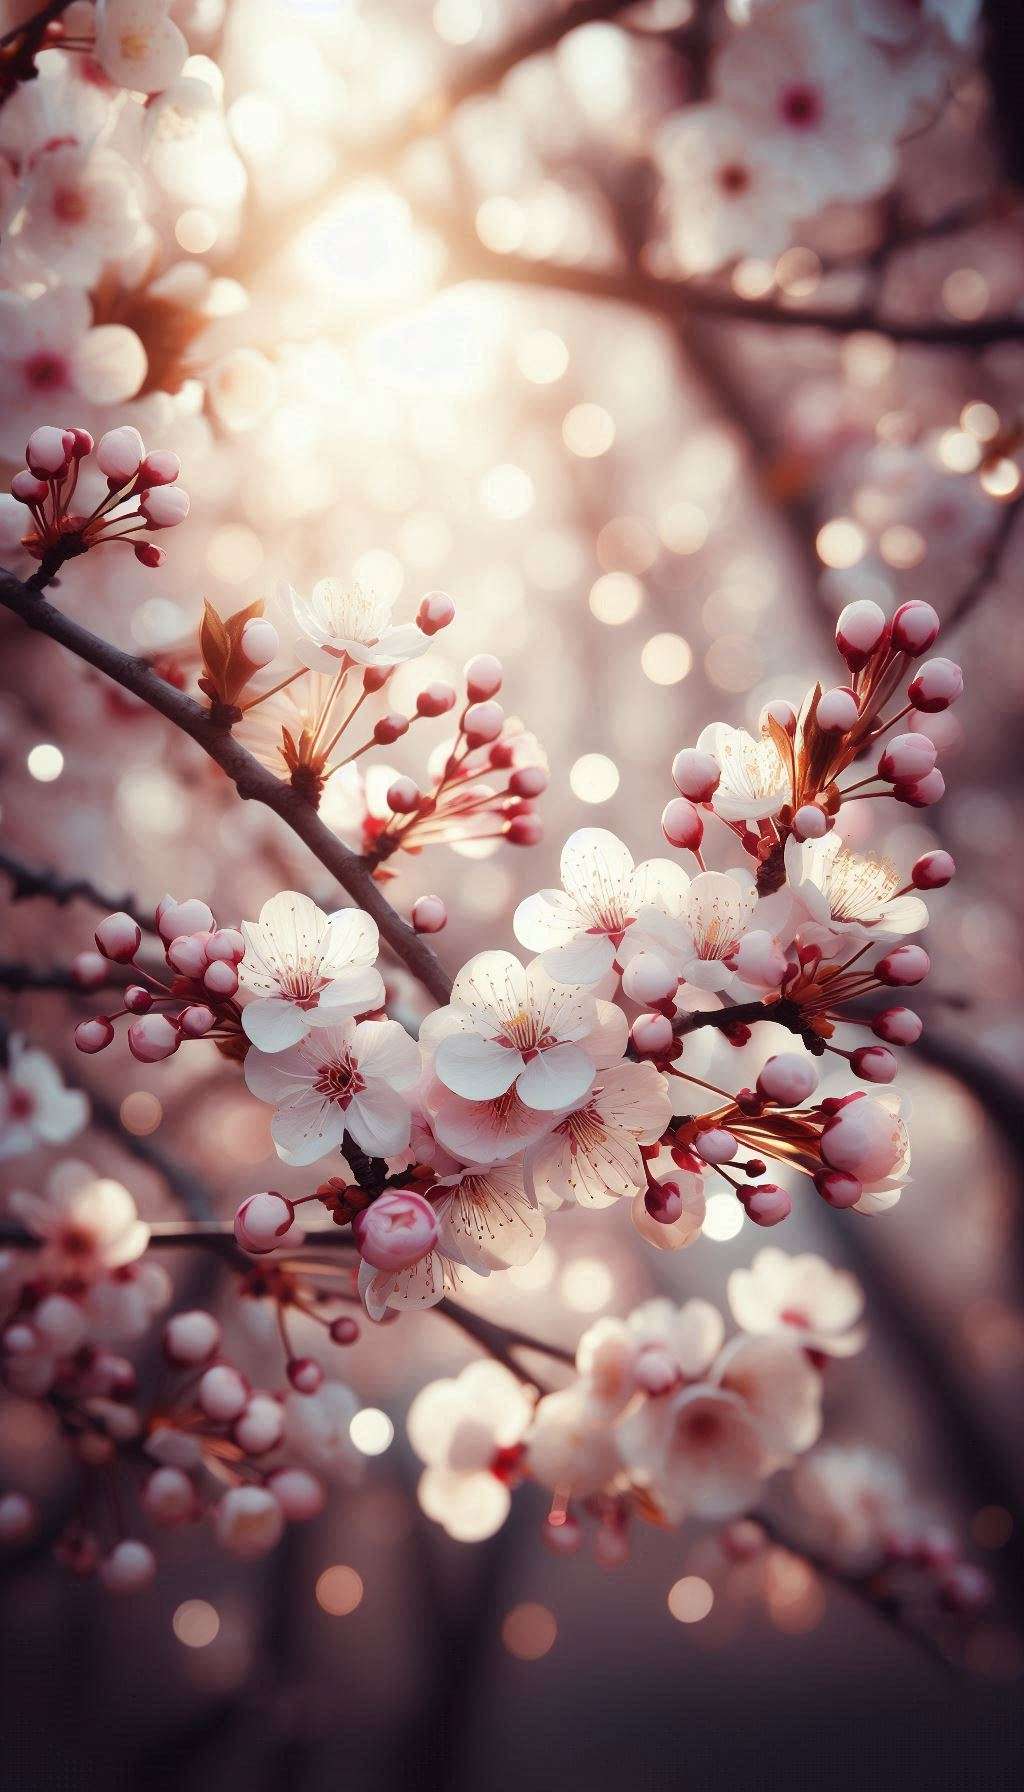 spring blossom nature wallpaper for mobile